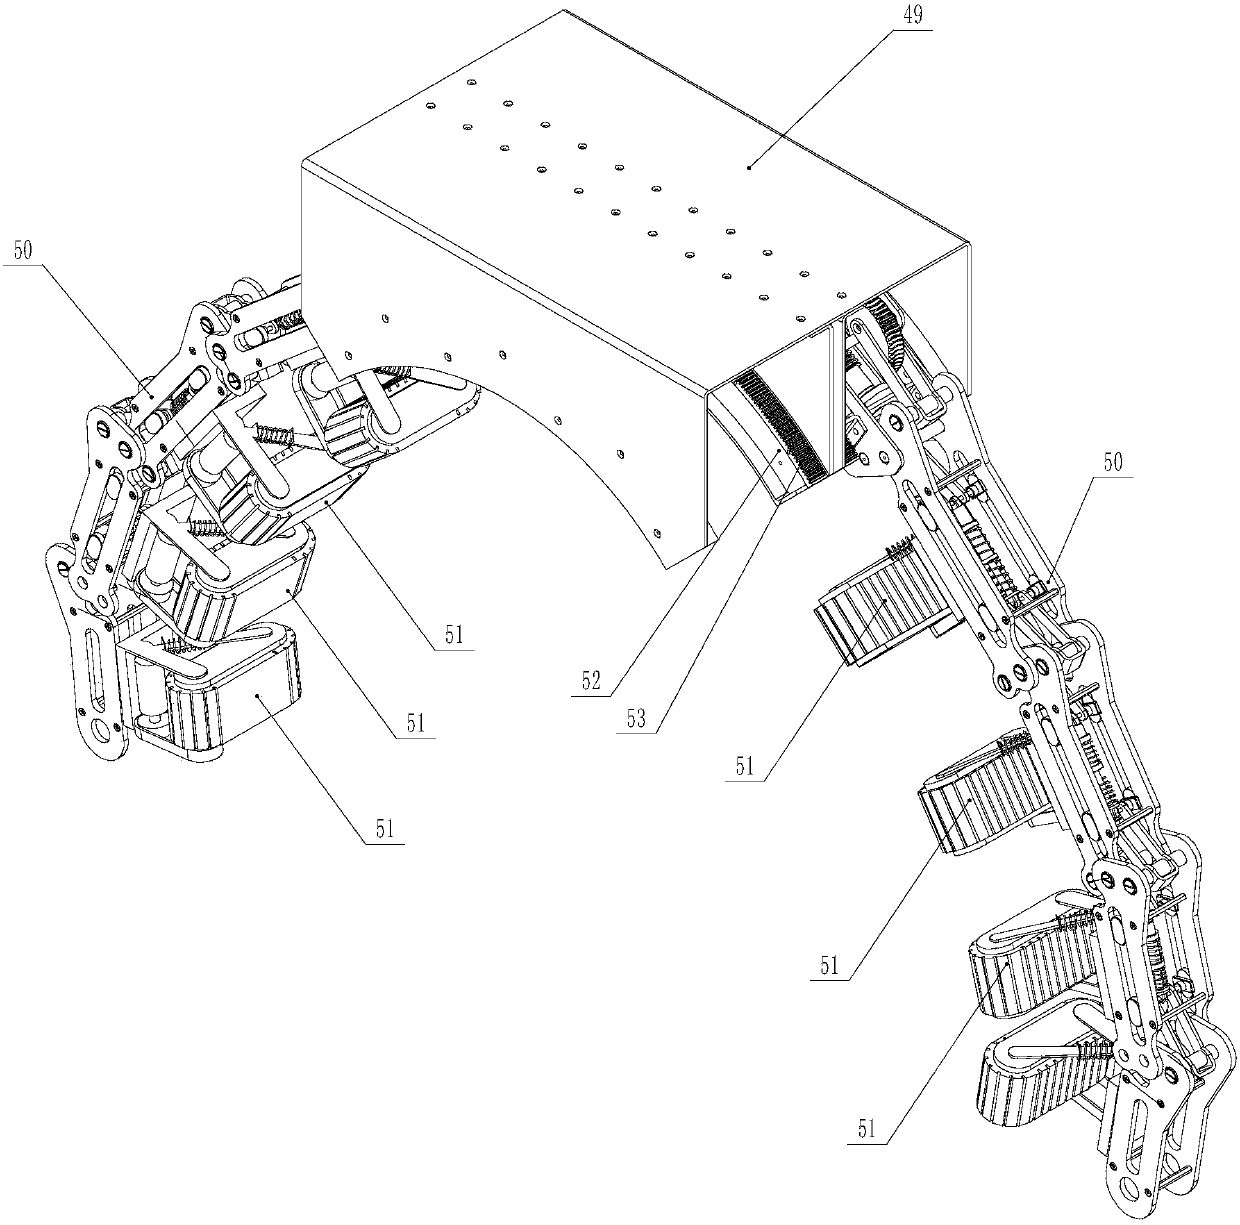 An obstacle-climbing mechanism for a rod-climbing robot